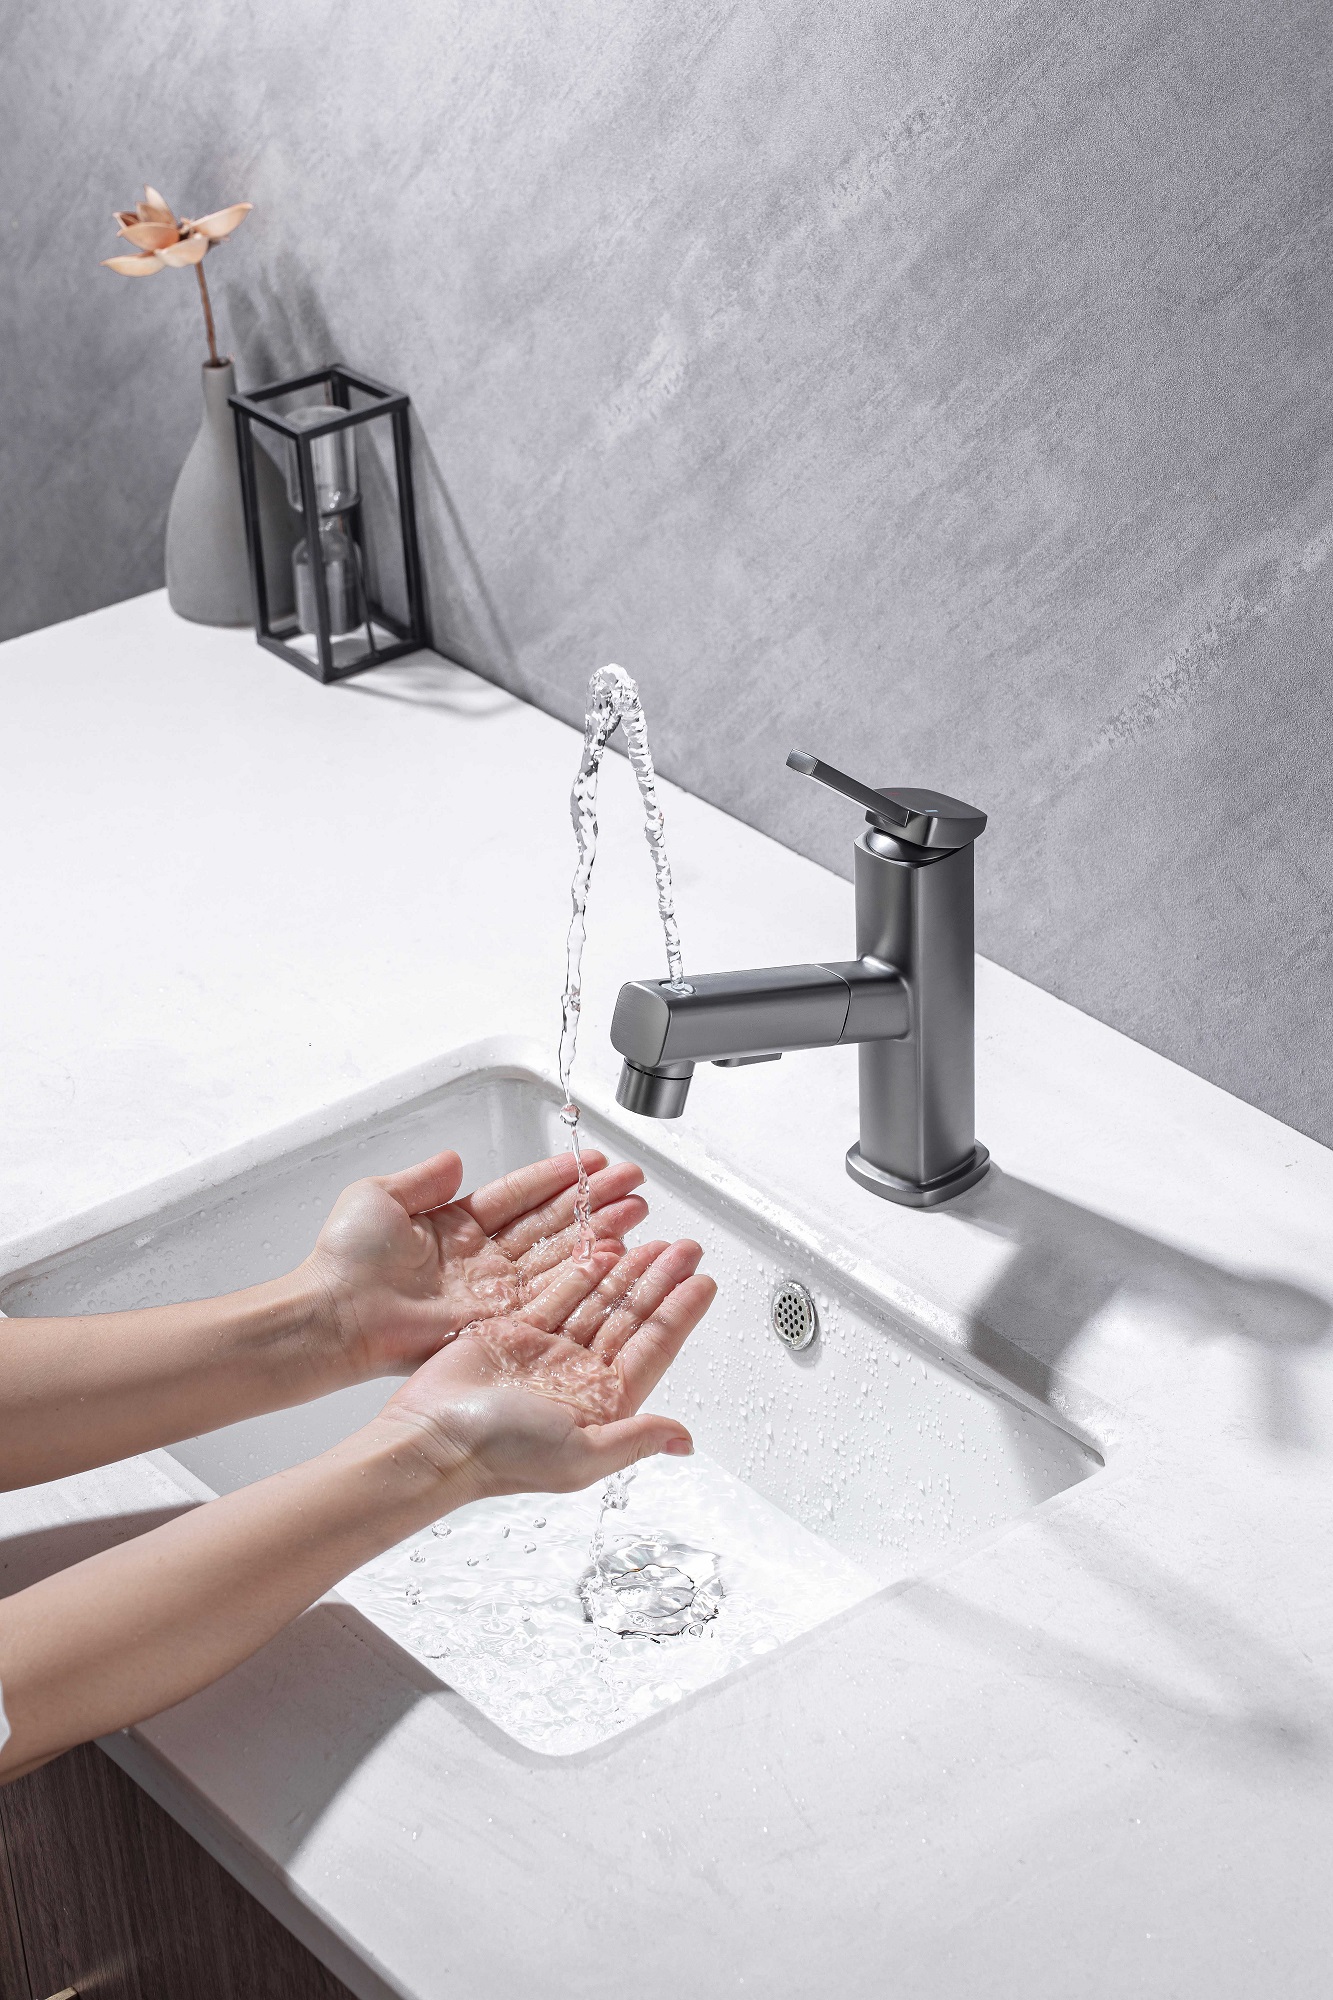 Смеситель для ванной комнаты с выдвижным распылителем для воды для зубной щетки Черные смесители для ванной комнаты